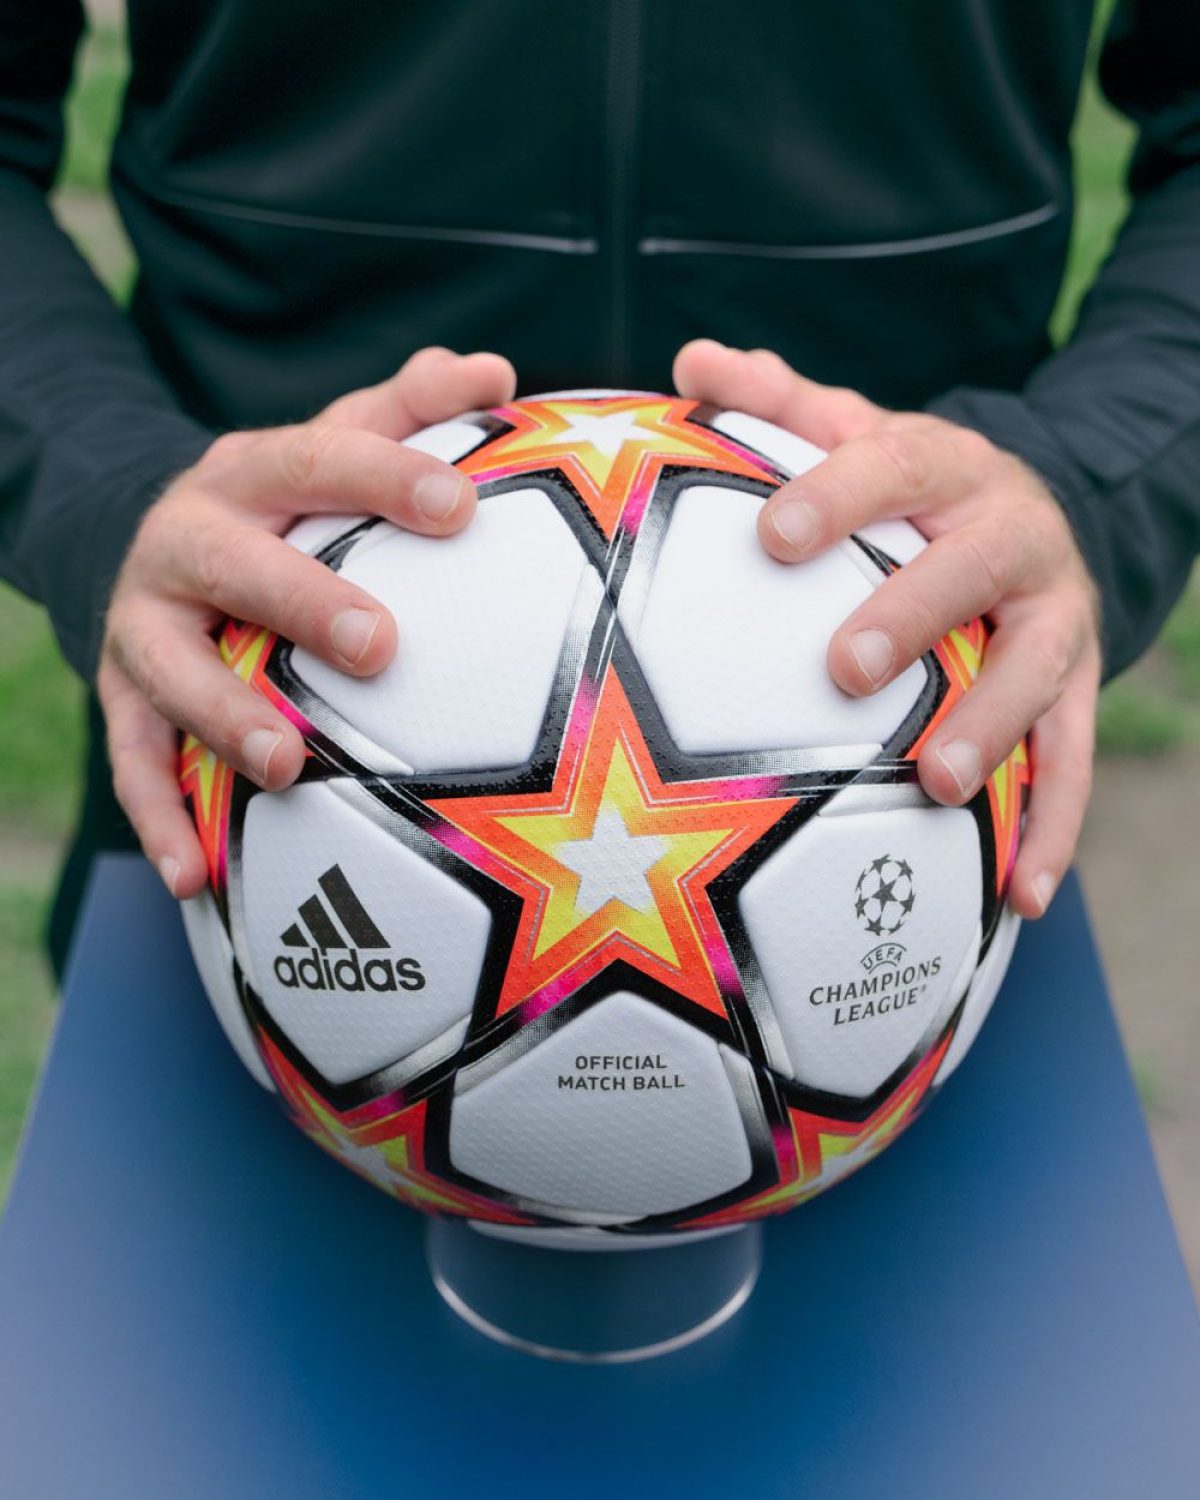 Le retour de la Champions League et du ballon adidas | Inside